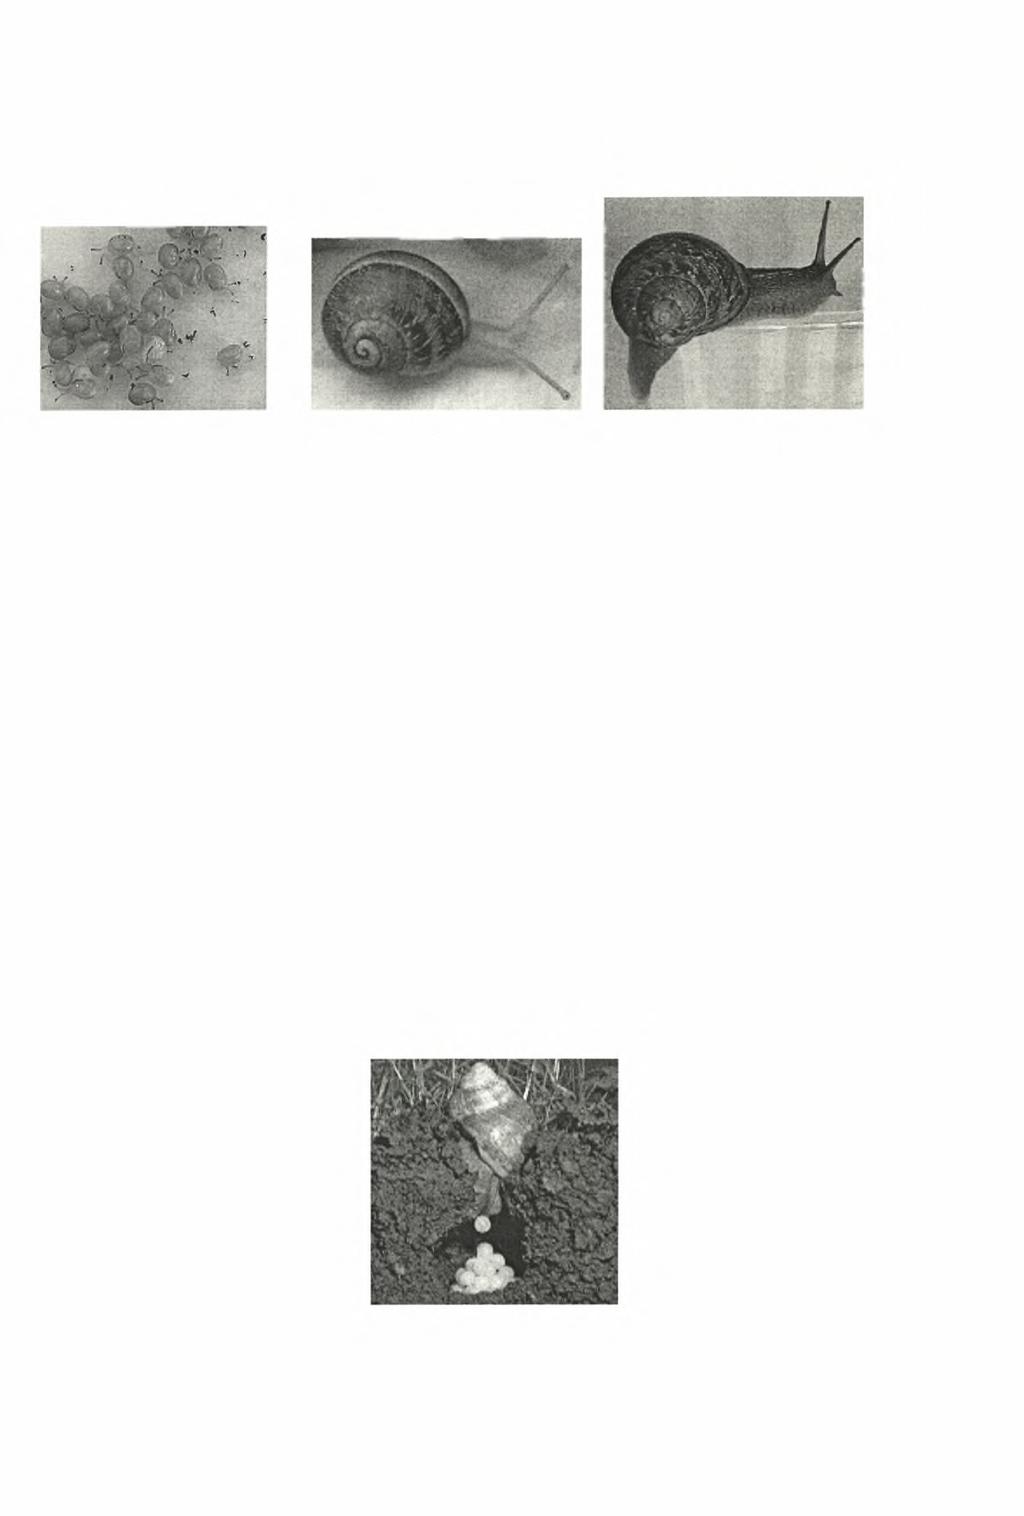 18 Εικόνα 4. Με τη σειρά από αριστερά: νεαρό, ανώριμο και ενήλικο στάδιο ατόμων του Helix aspersa (από: www.ecogen.dk). To Helix aspersa αποθέτει κατά μέσο όρο 100 αβγά σε κάθε απόθεση (Εικ.